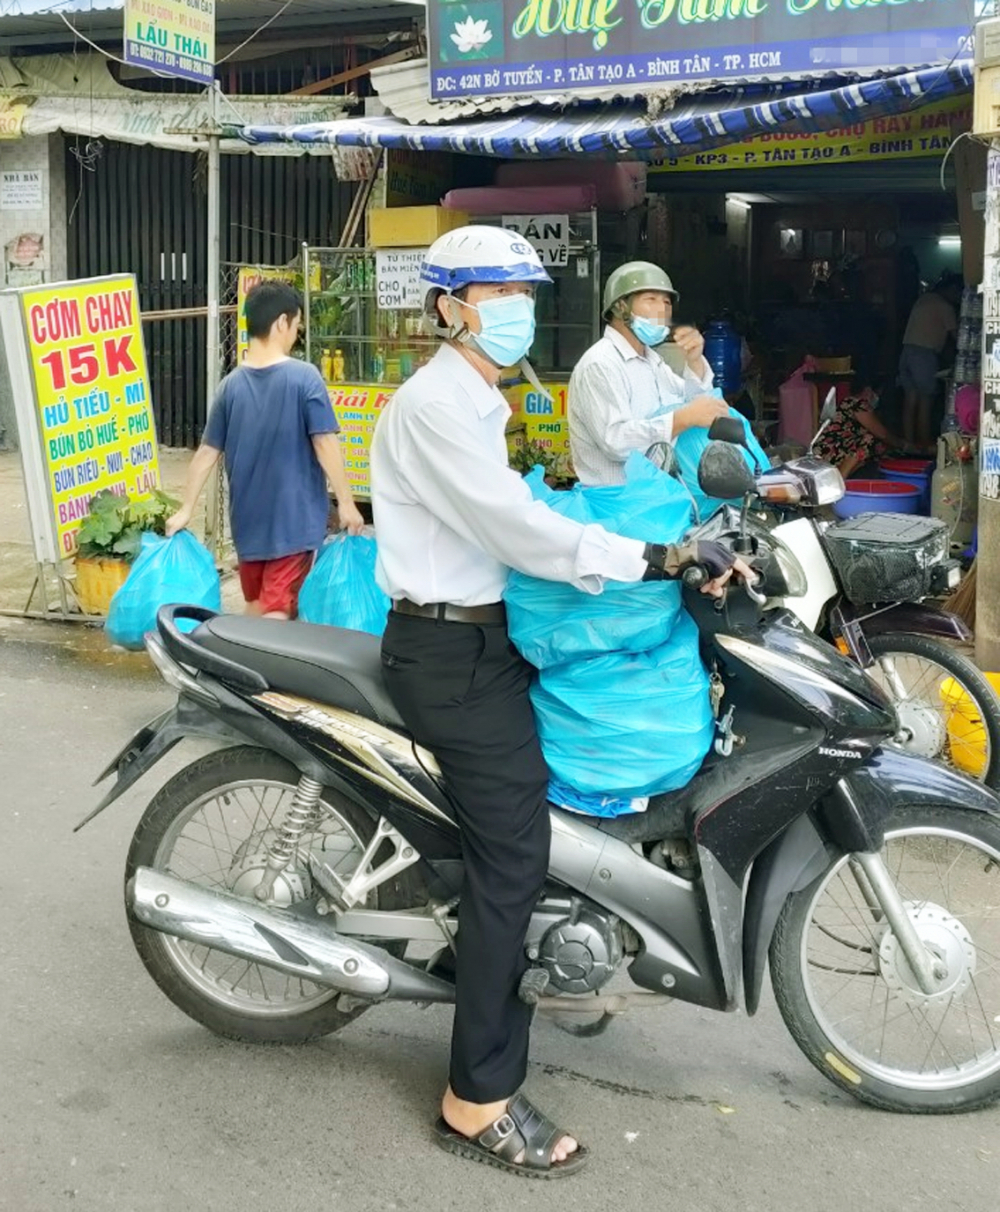 Ông Nguyễn Văn Thiều (giữa khung hình) và các hội viên cựu chiến binh đi giao cơm cho người dân ở khu phong tỏa